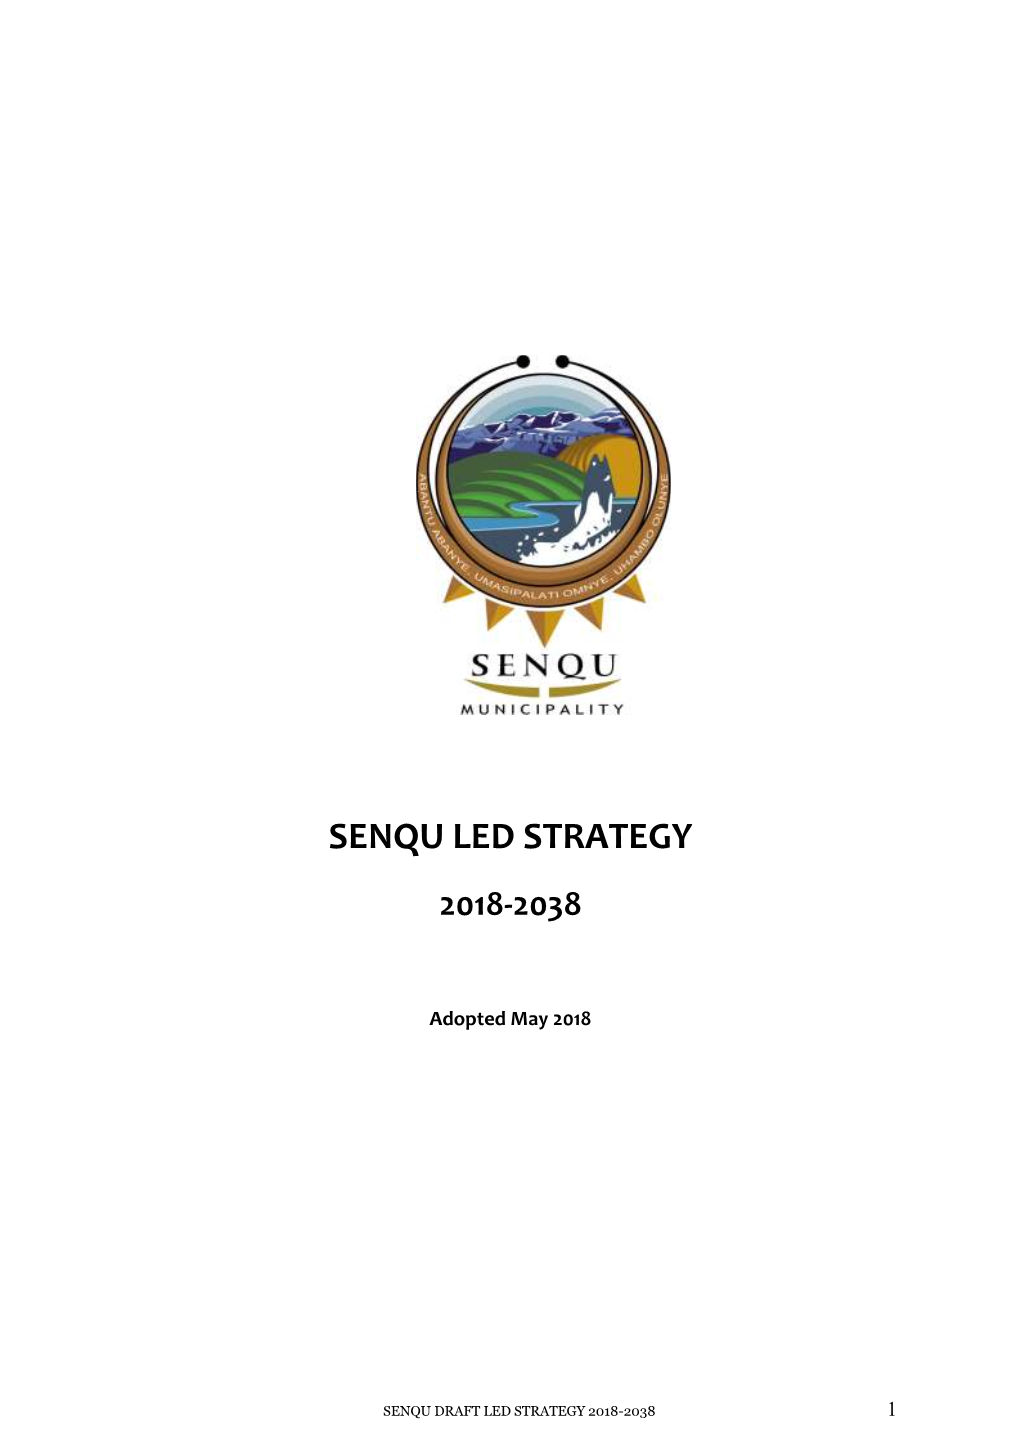 Senqu Led Strategy 2018-2038